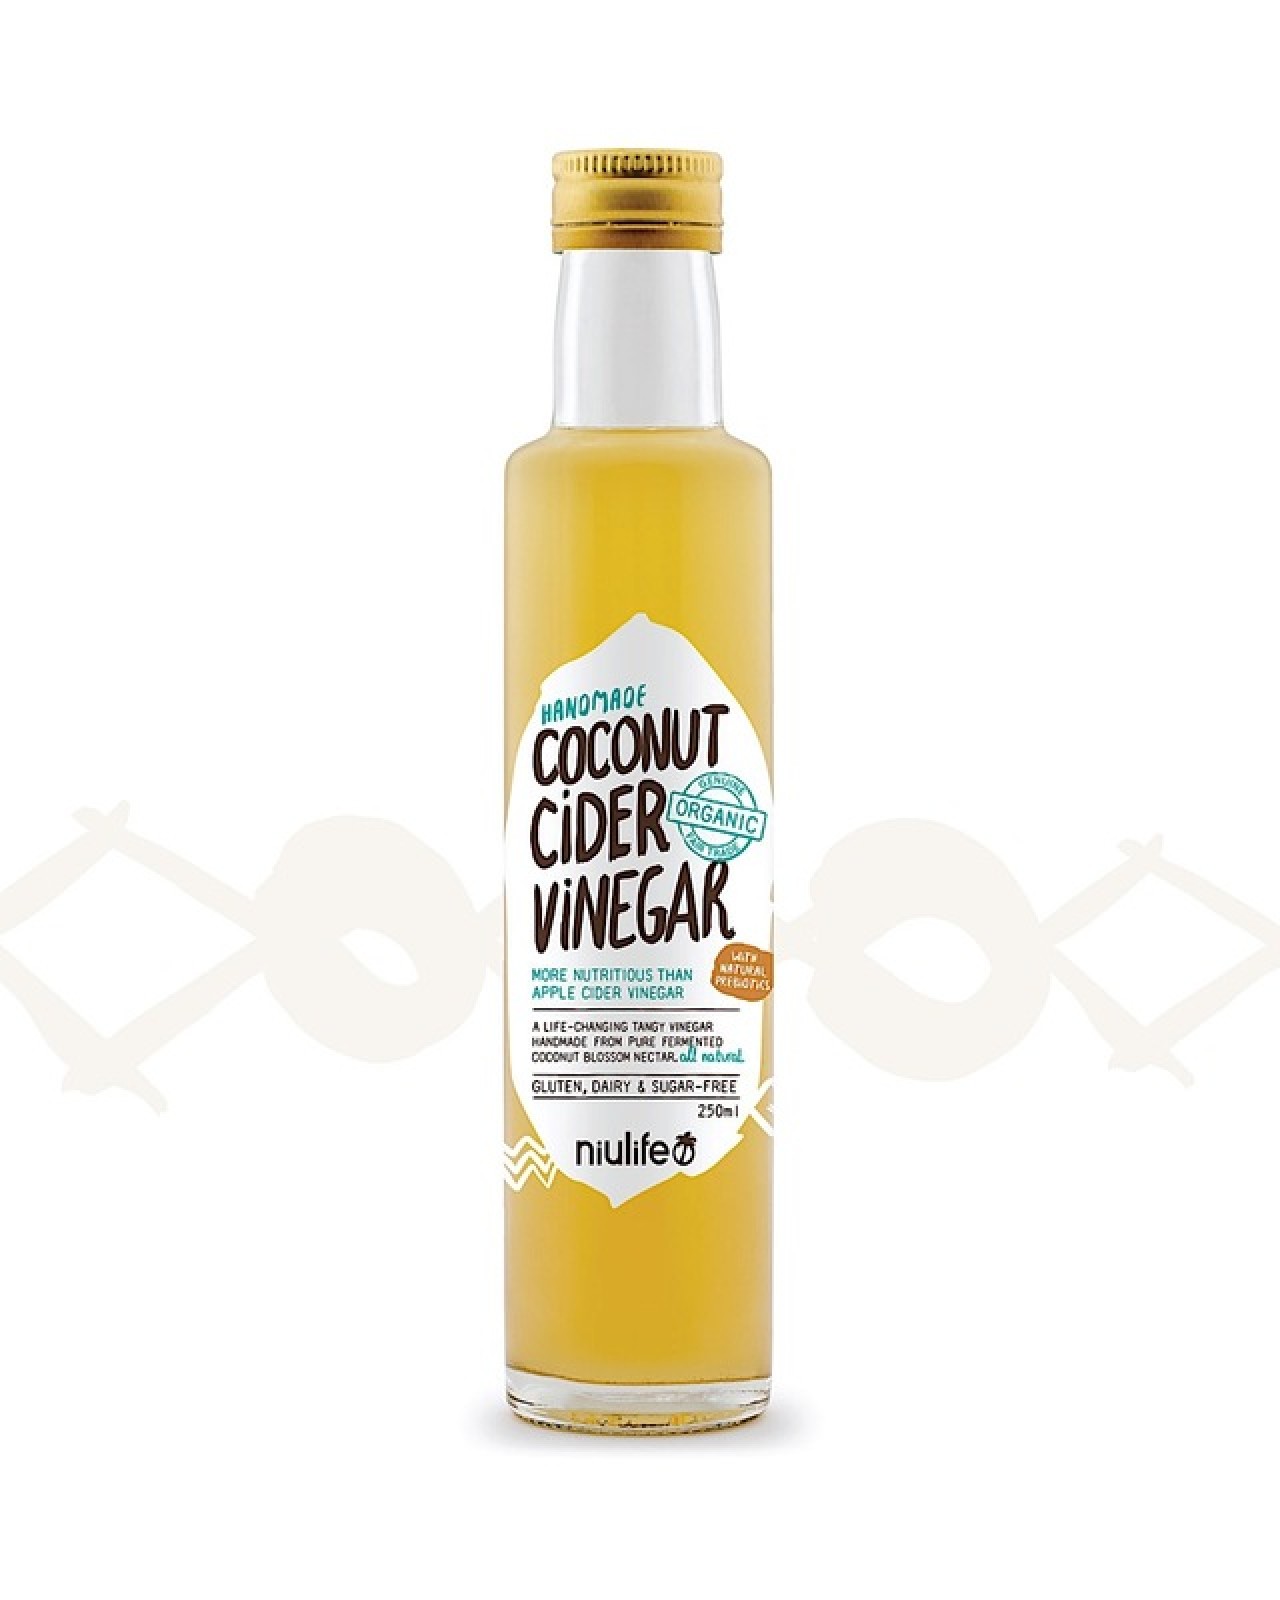 Coconut Vinegar